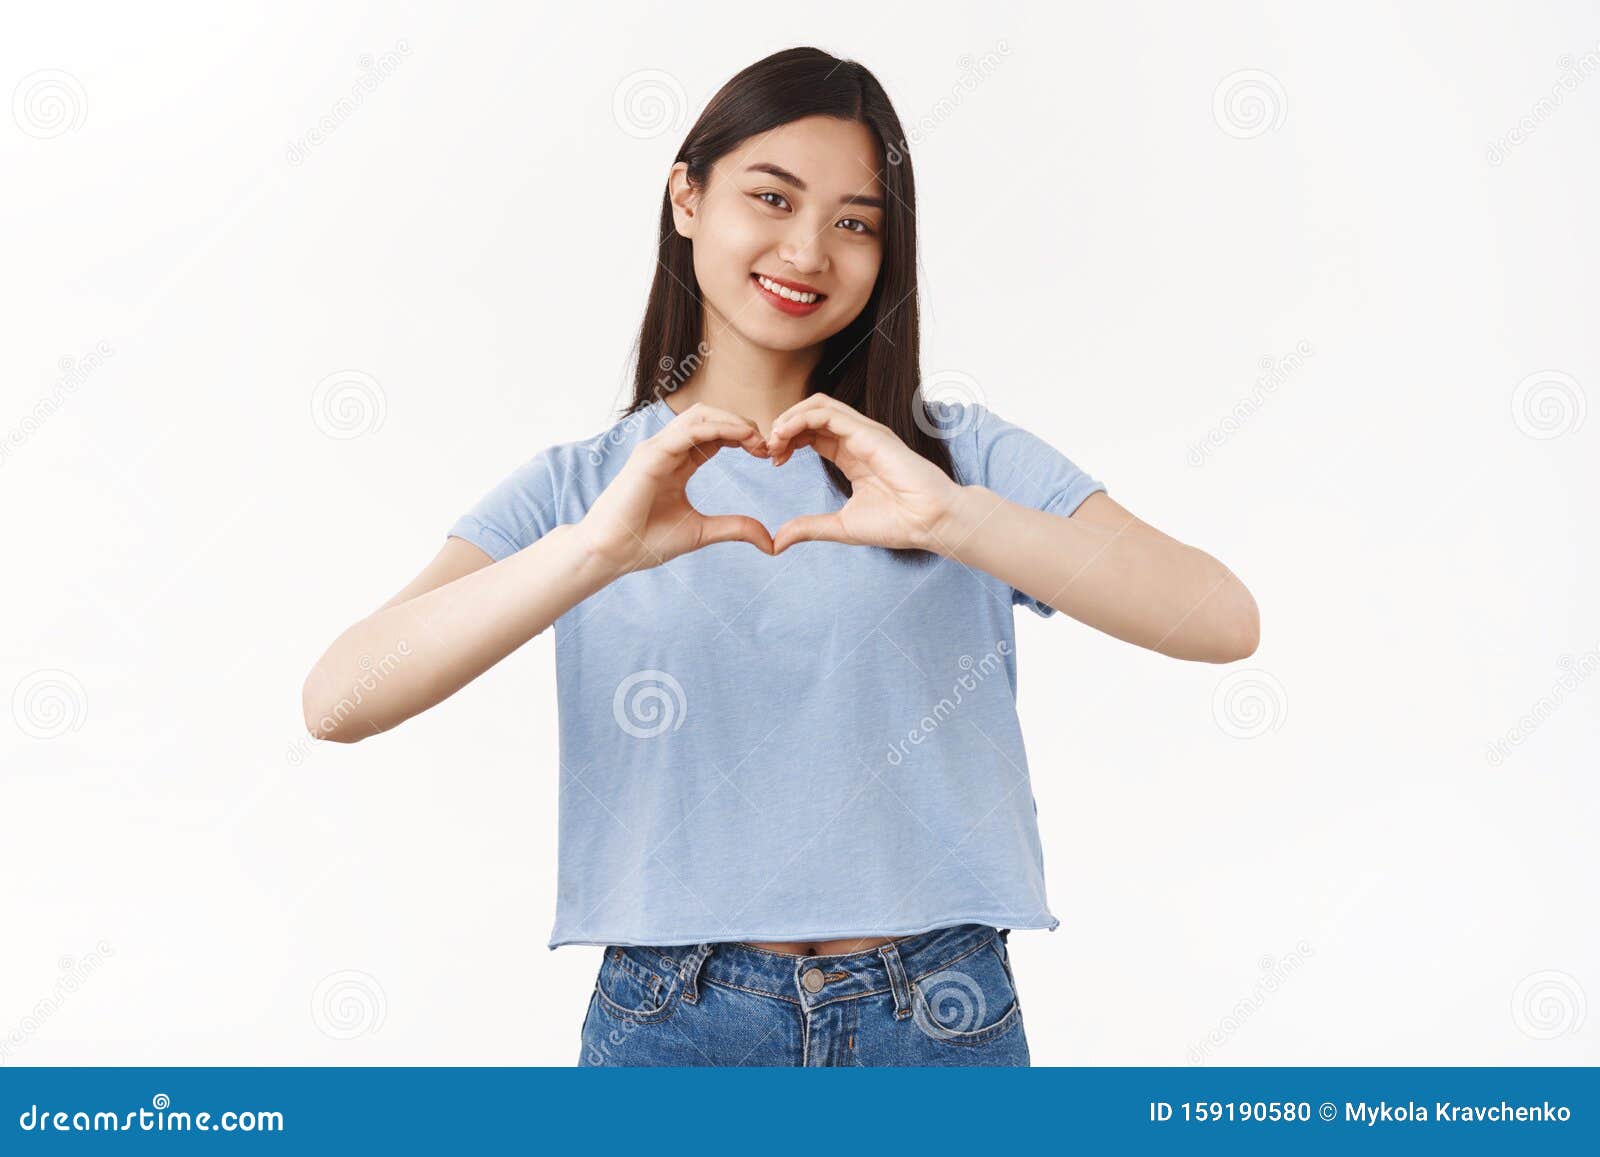 Happy Pride Spread Love Cheerful Optimistic Cute Asian